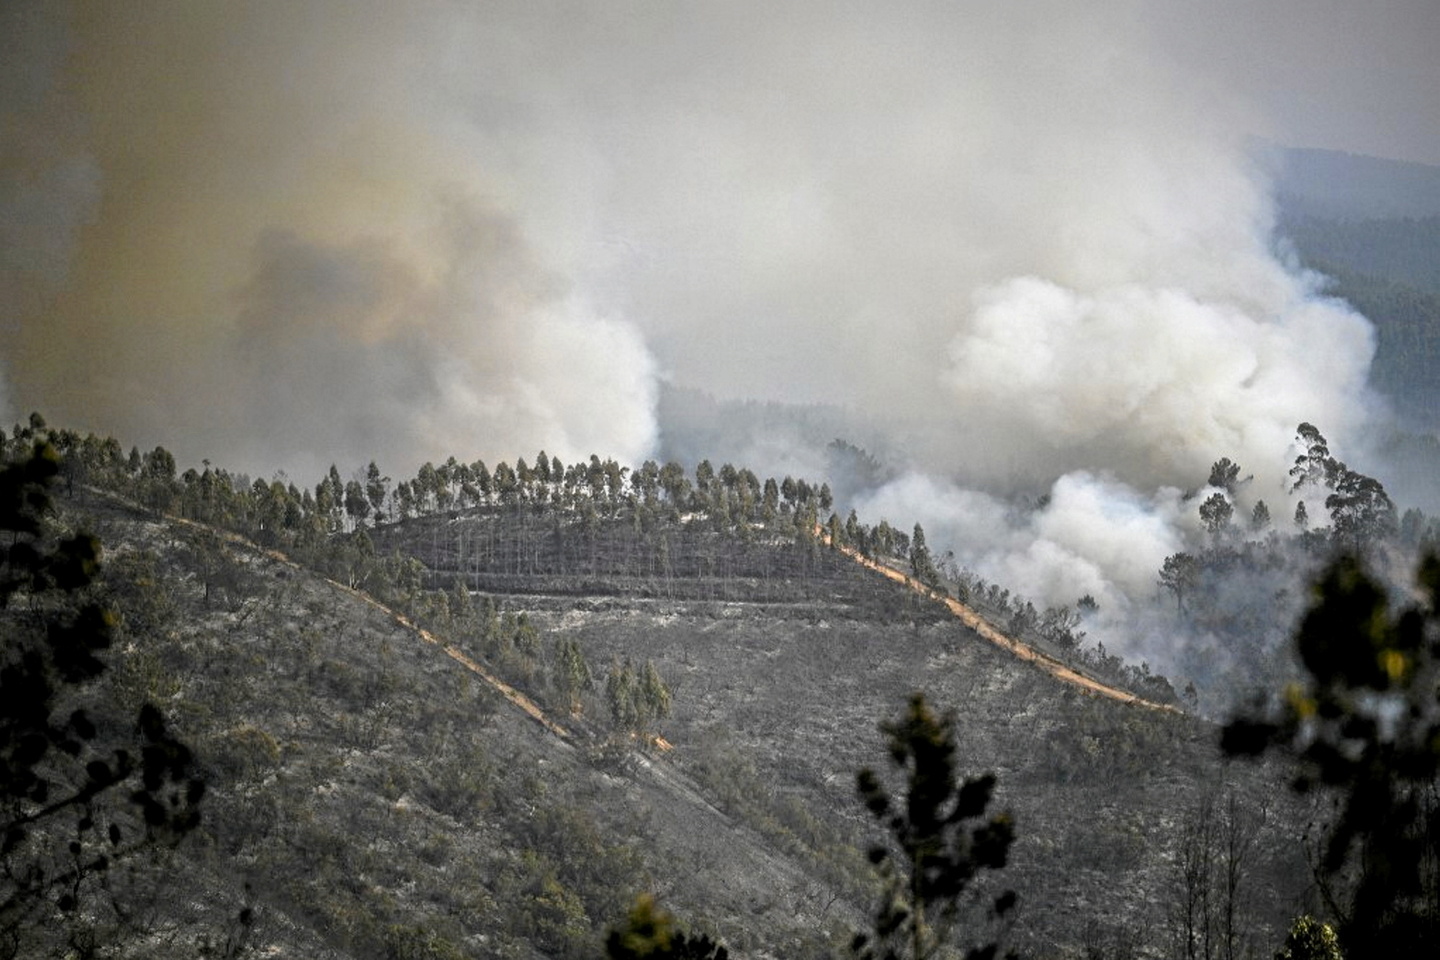 Canicule : l’Espagne de nouveau frappée, le Portugal espère une accalmie face aux incendies